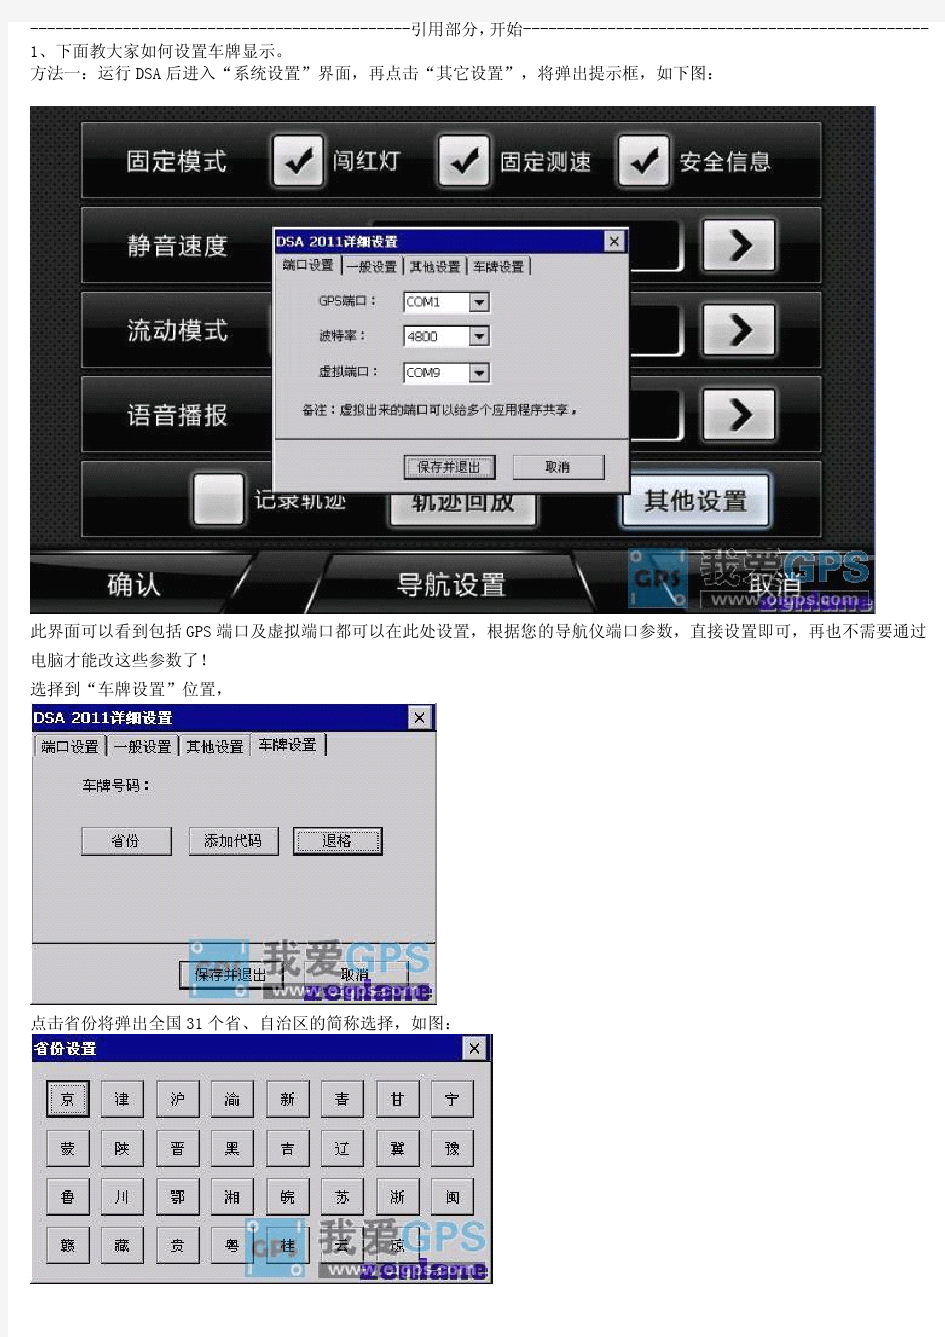 【原创】华阳CE6AC8汽车导航仪‘一机多图’制作教程